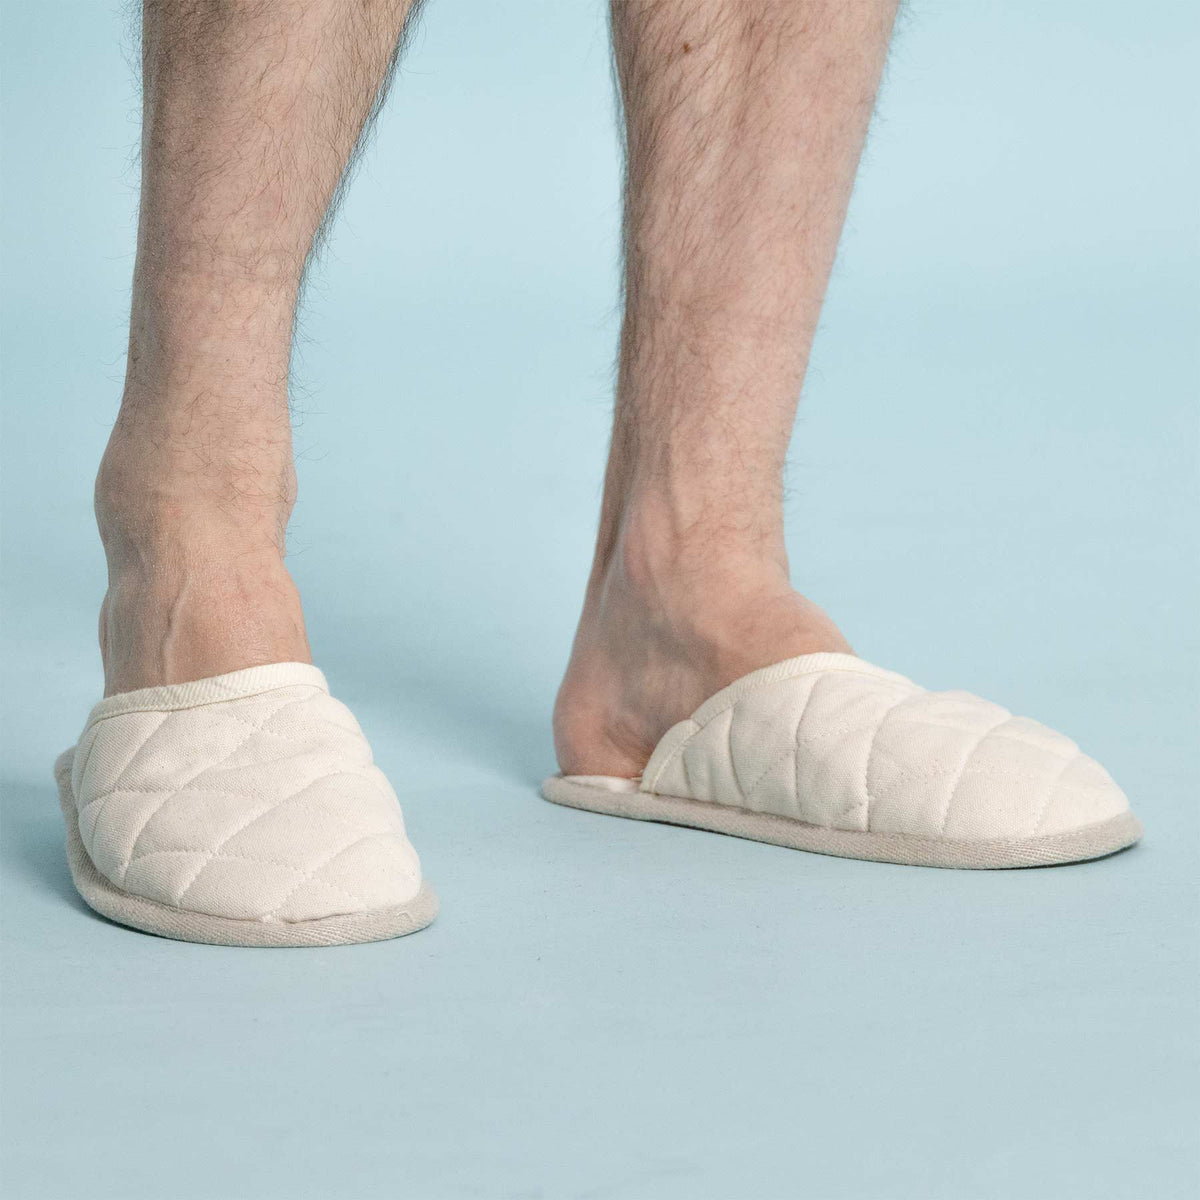 KYOTO 100% Organic Hemp Slippers (Men's & Women's Sizes)